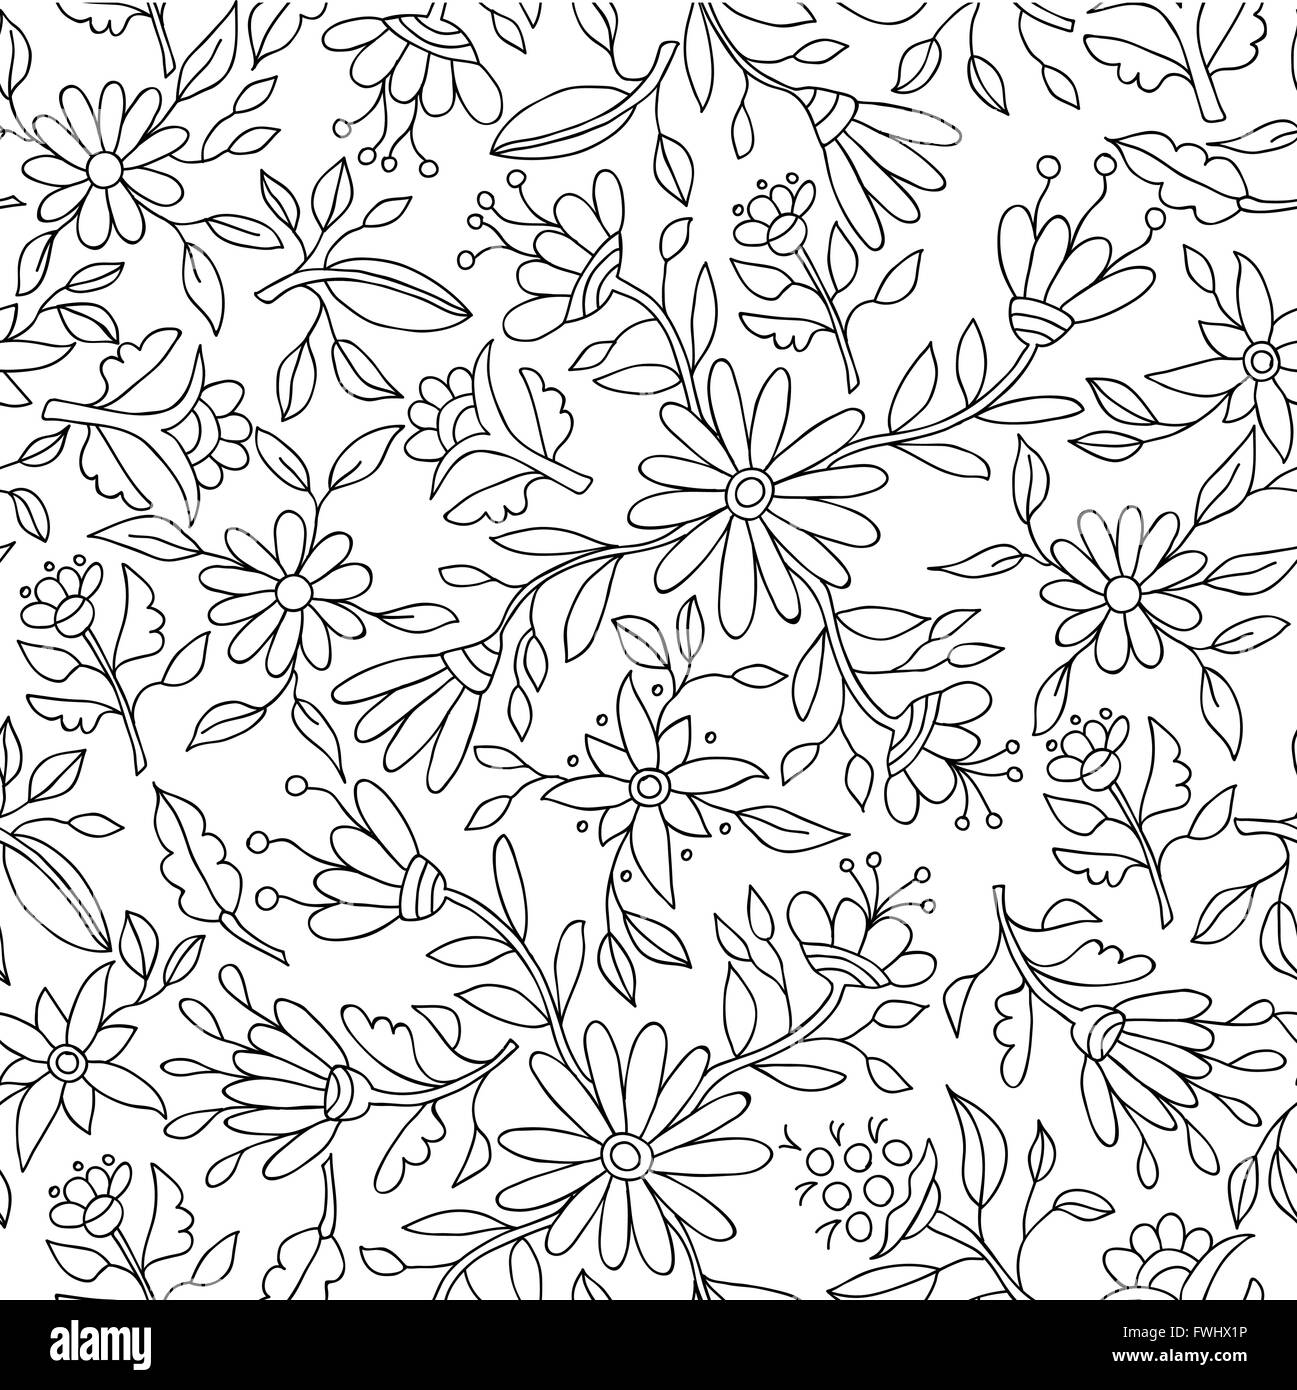 Printemps Floral motif de fond en noir et blanc avec des éléments de la nature et décrit la fleur idéal pour adulte livre à colorier. Spe1 Illustration de Vecteur